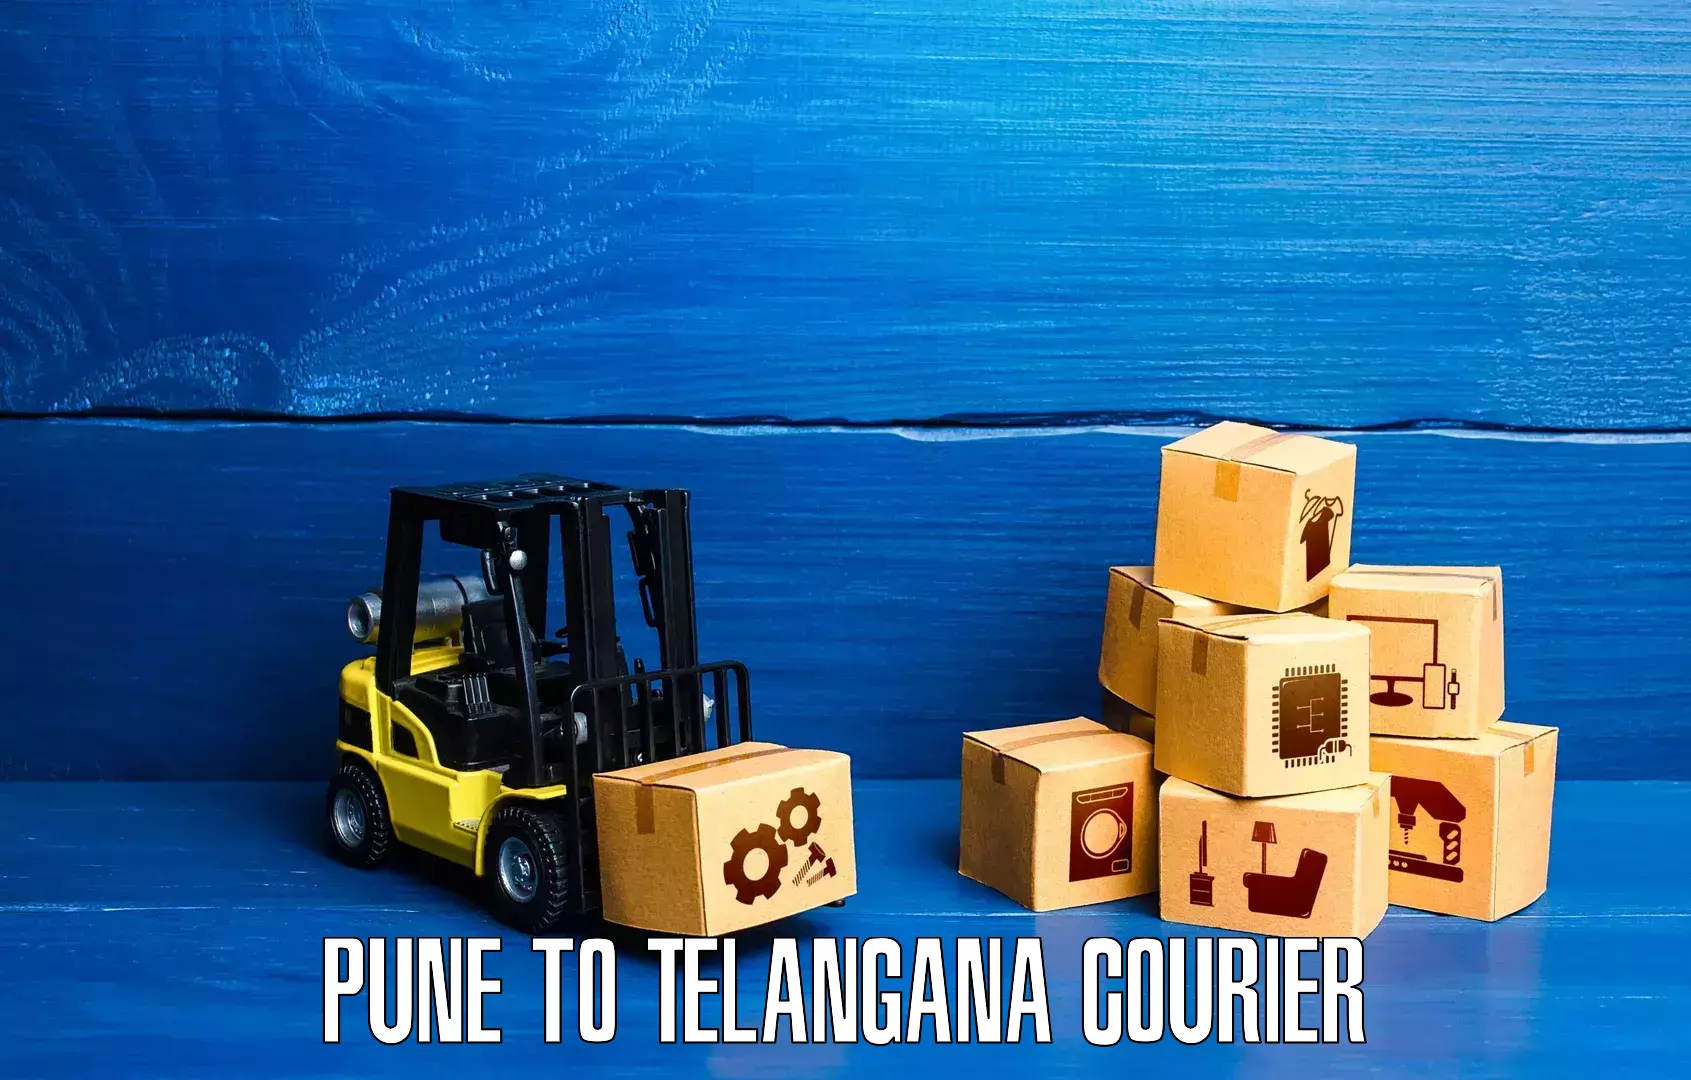 Courier membership in Pune to Telangana